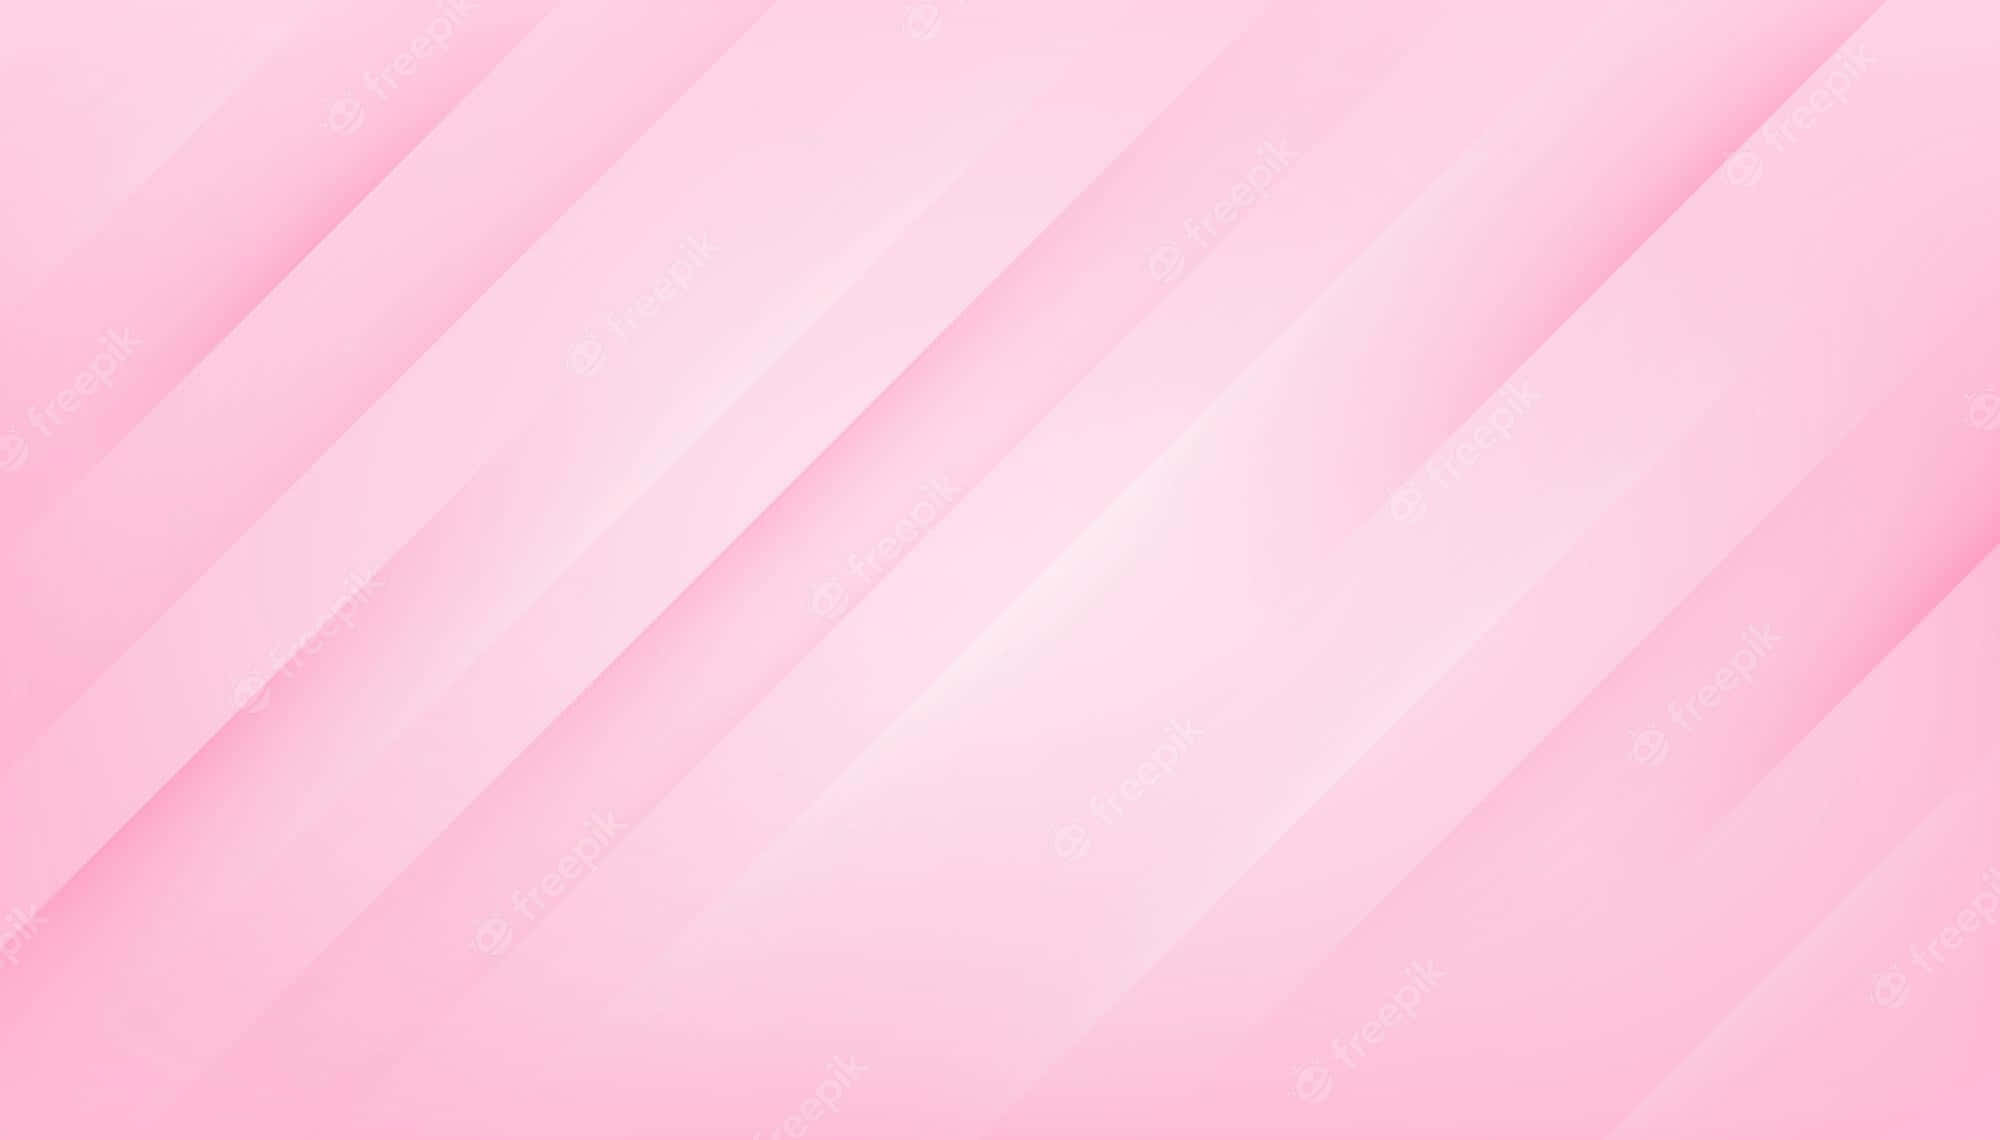 Light Pink With Slanted Line Design Background